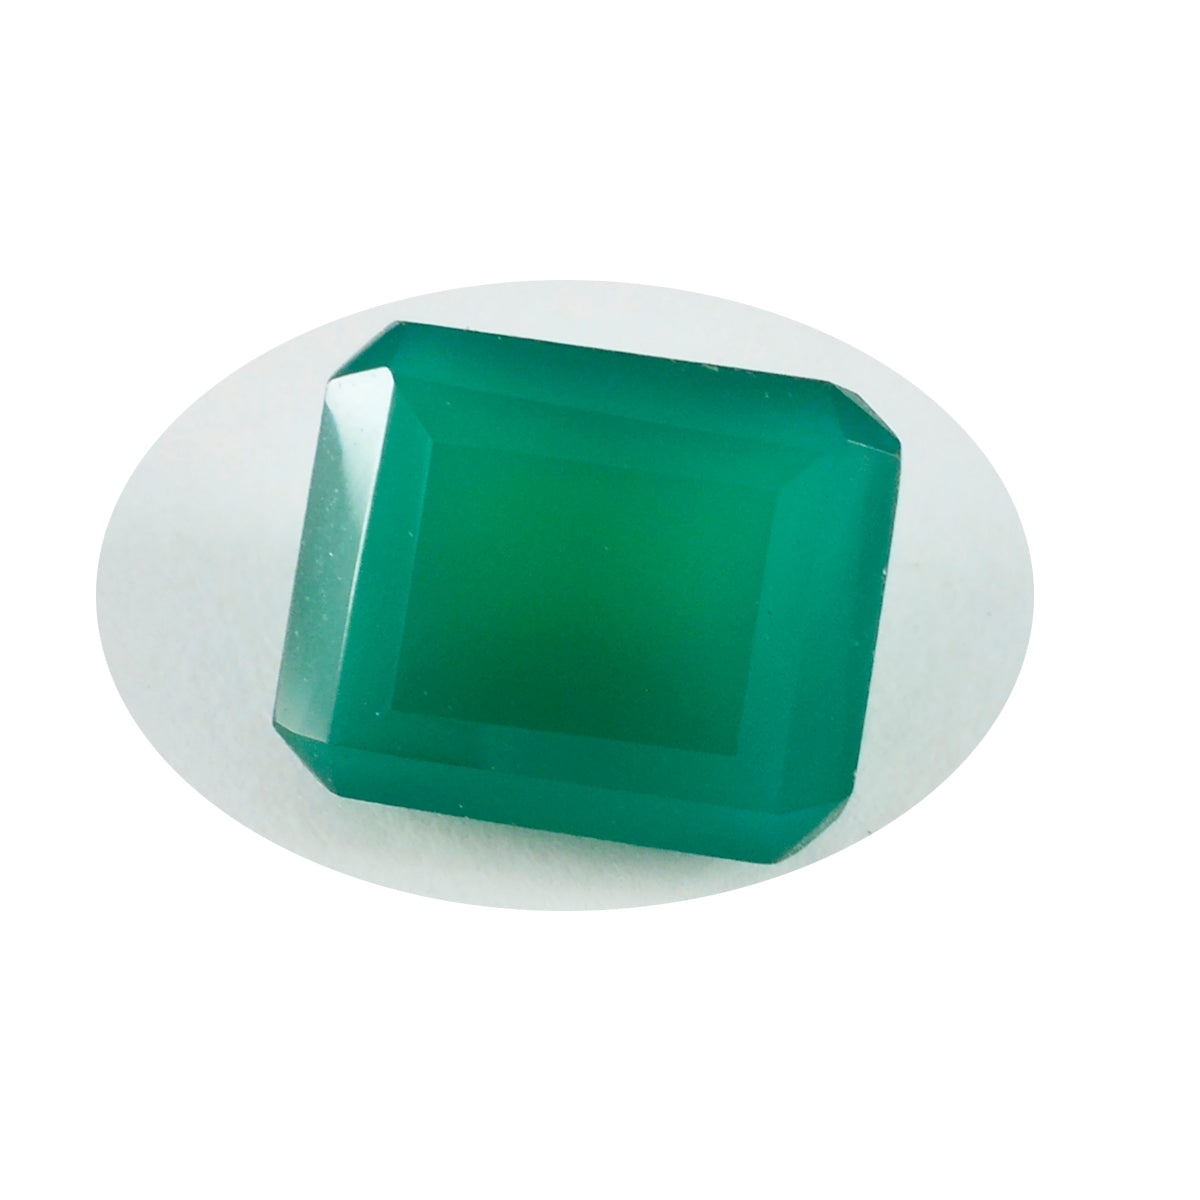 riyogems 1 шт. натуральный зеленый оникс ограненный 10х14 мм восьмиугольной формы хорошее качество свободный драгоценный камень